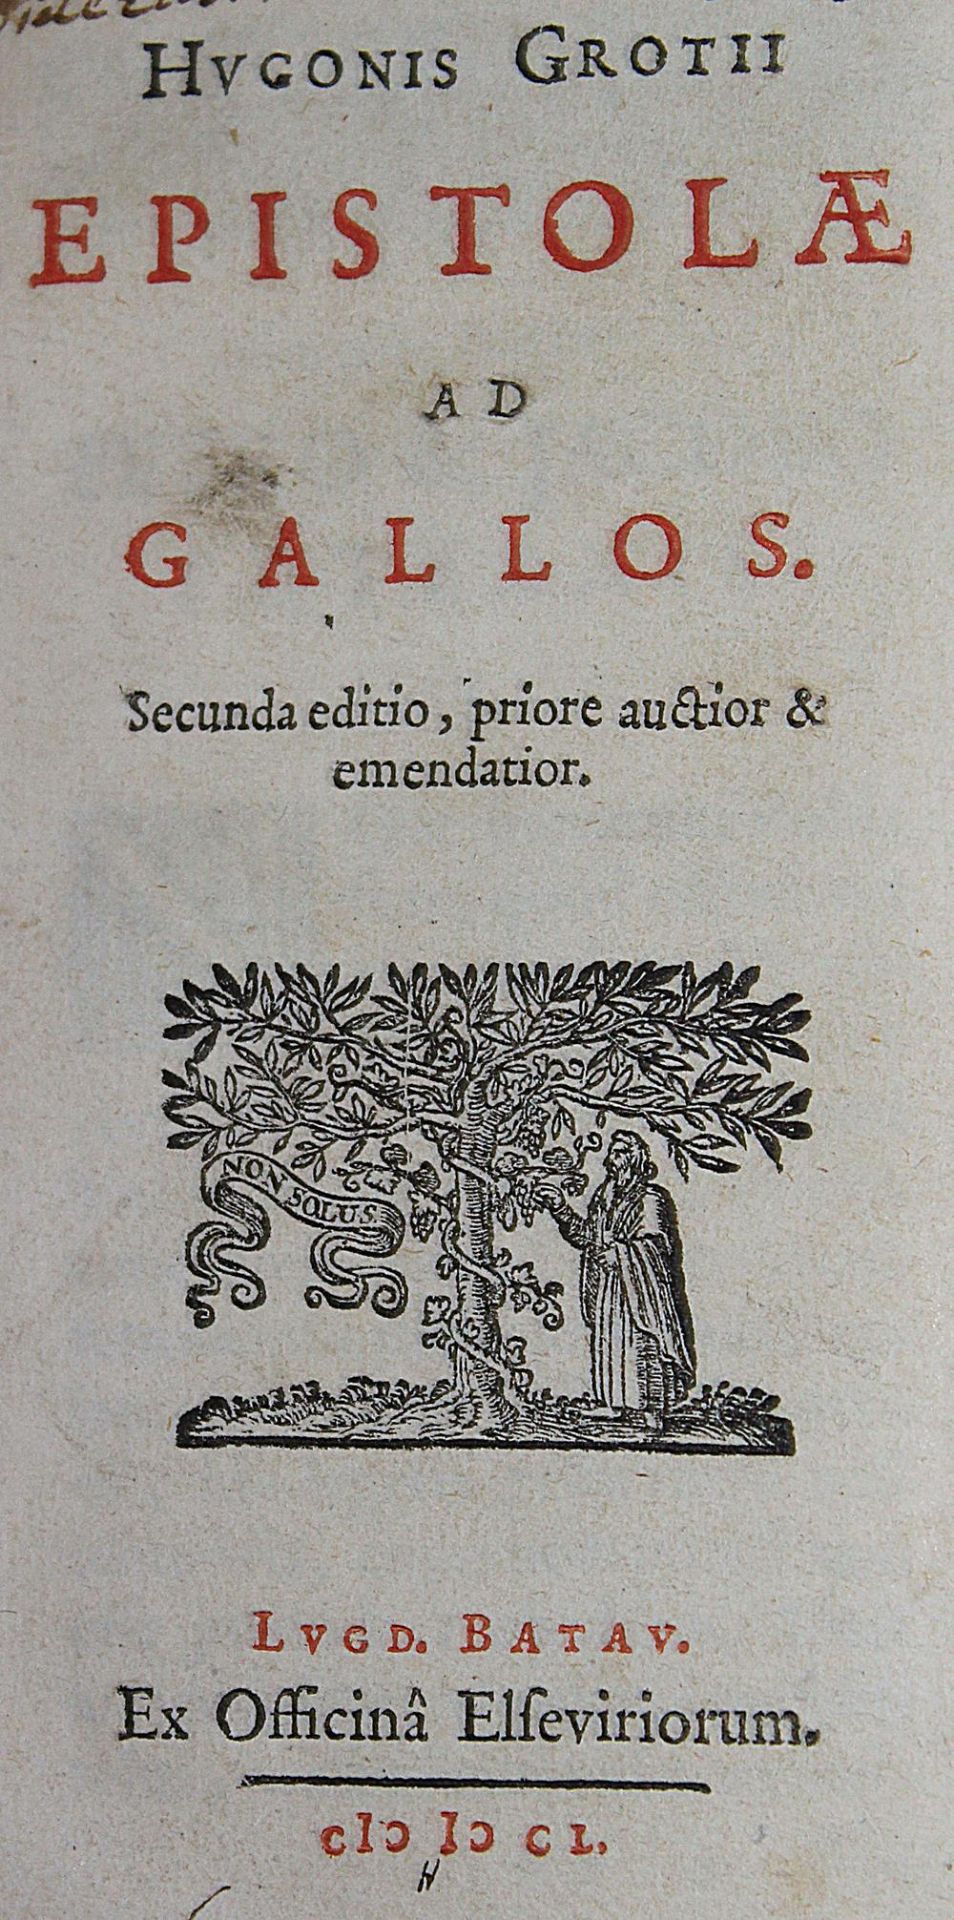 Grotius,H.Epistolae ad Gallos. 2. ed. Leiden, Elzevier 1650. 12°. 472 S., 1 Bl. Prgt. d. Zt. (E